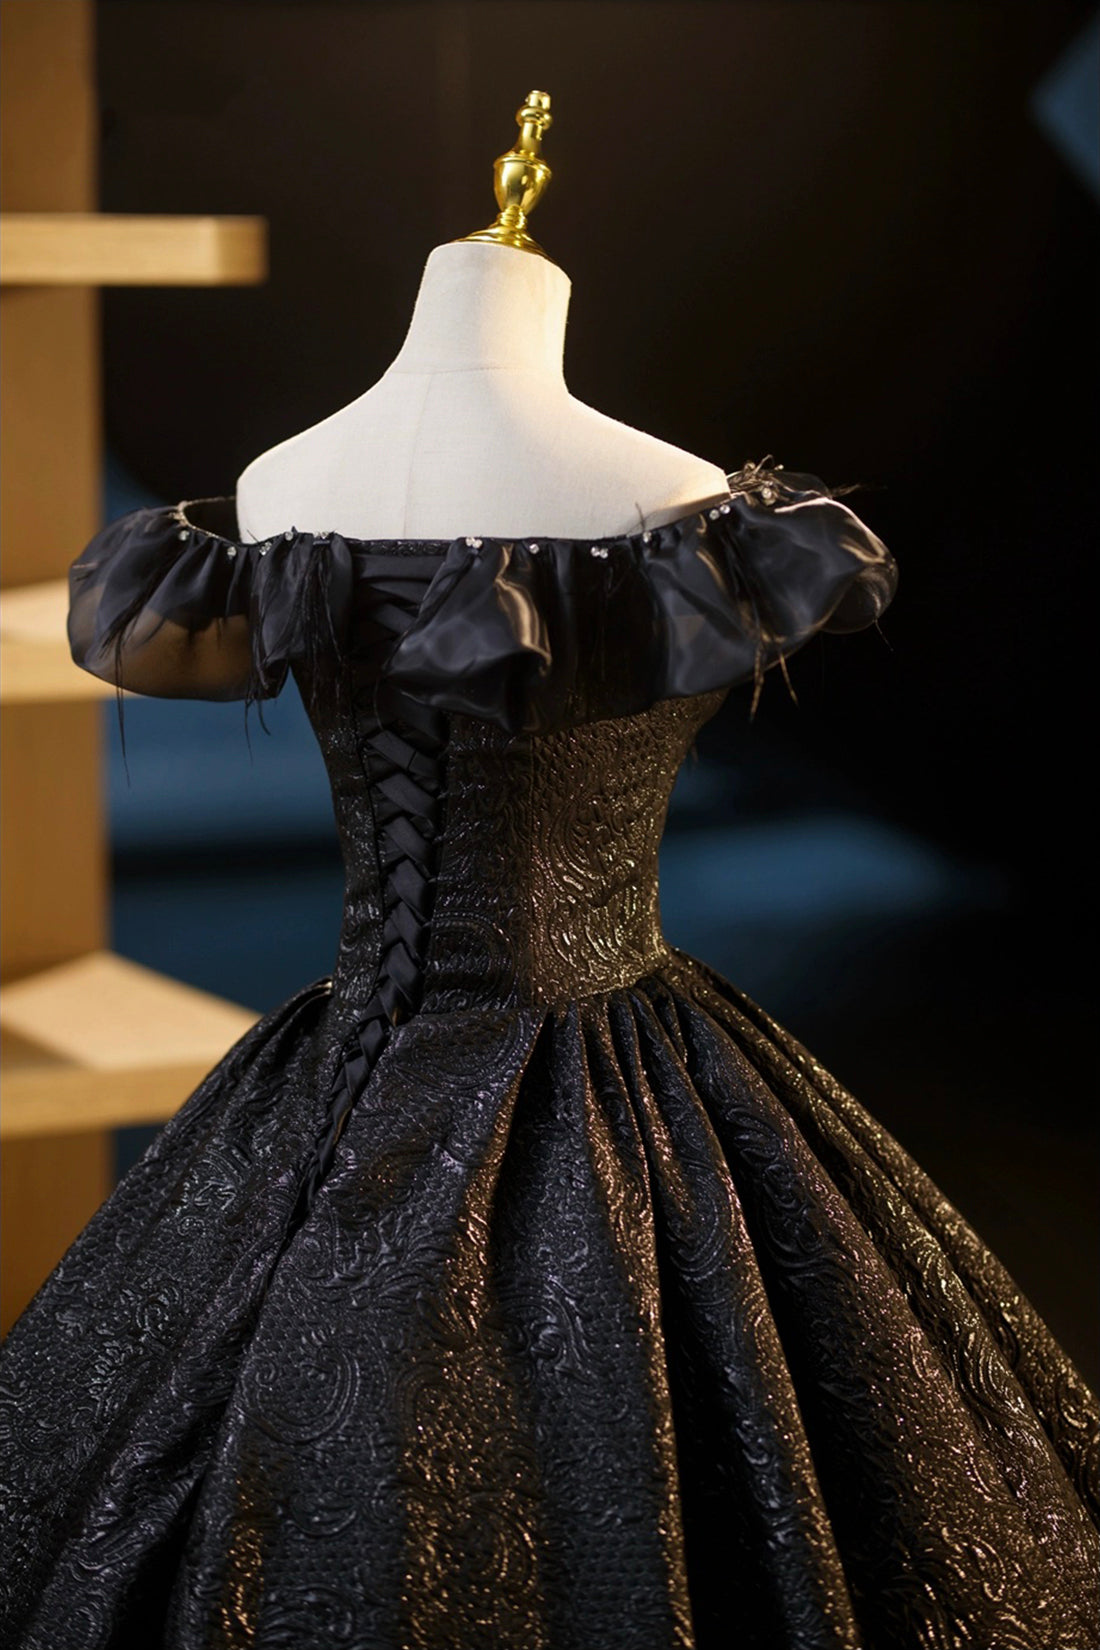 Black Floor Length V-neck Off the Shoulder Formal Dress, Black A-Line Evening Dress